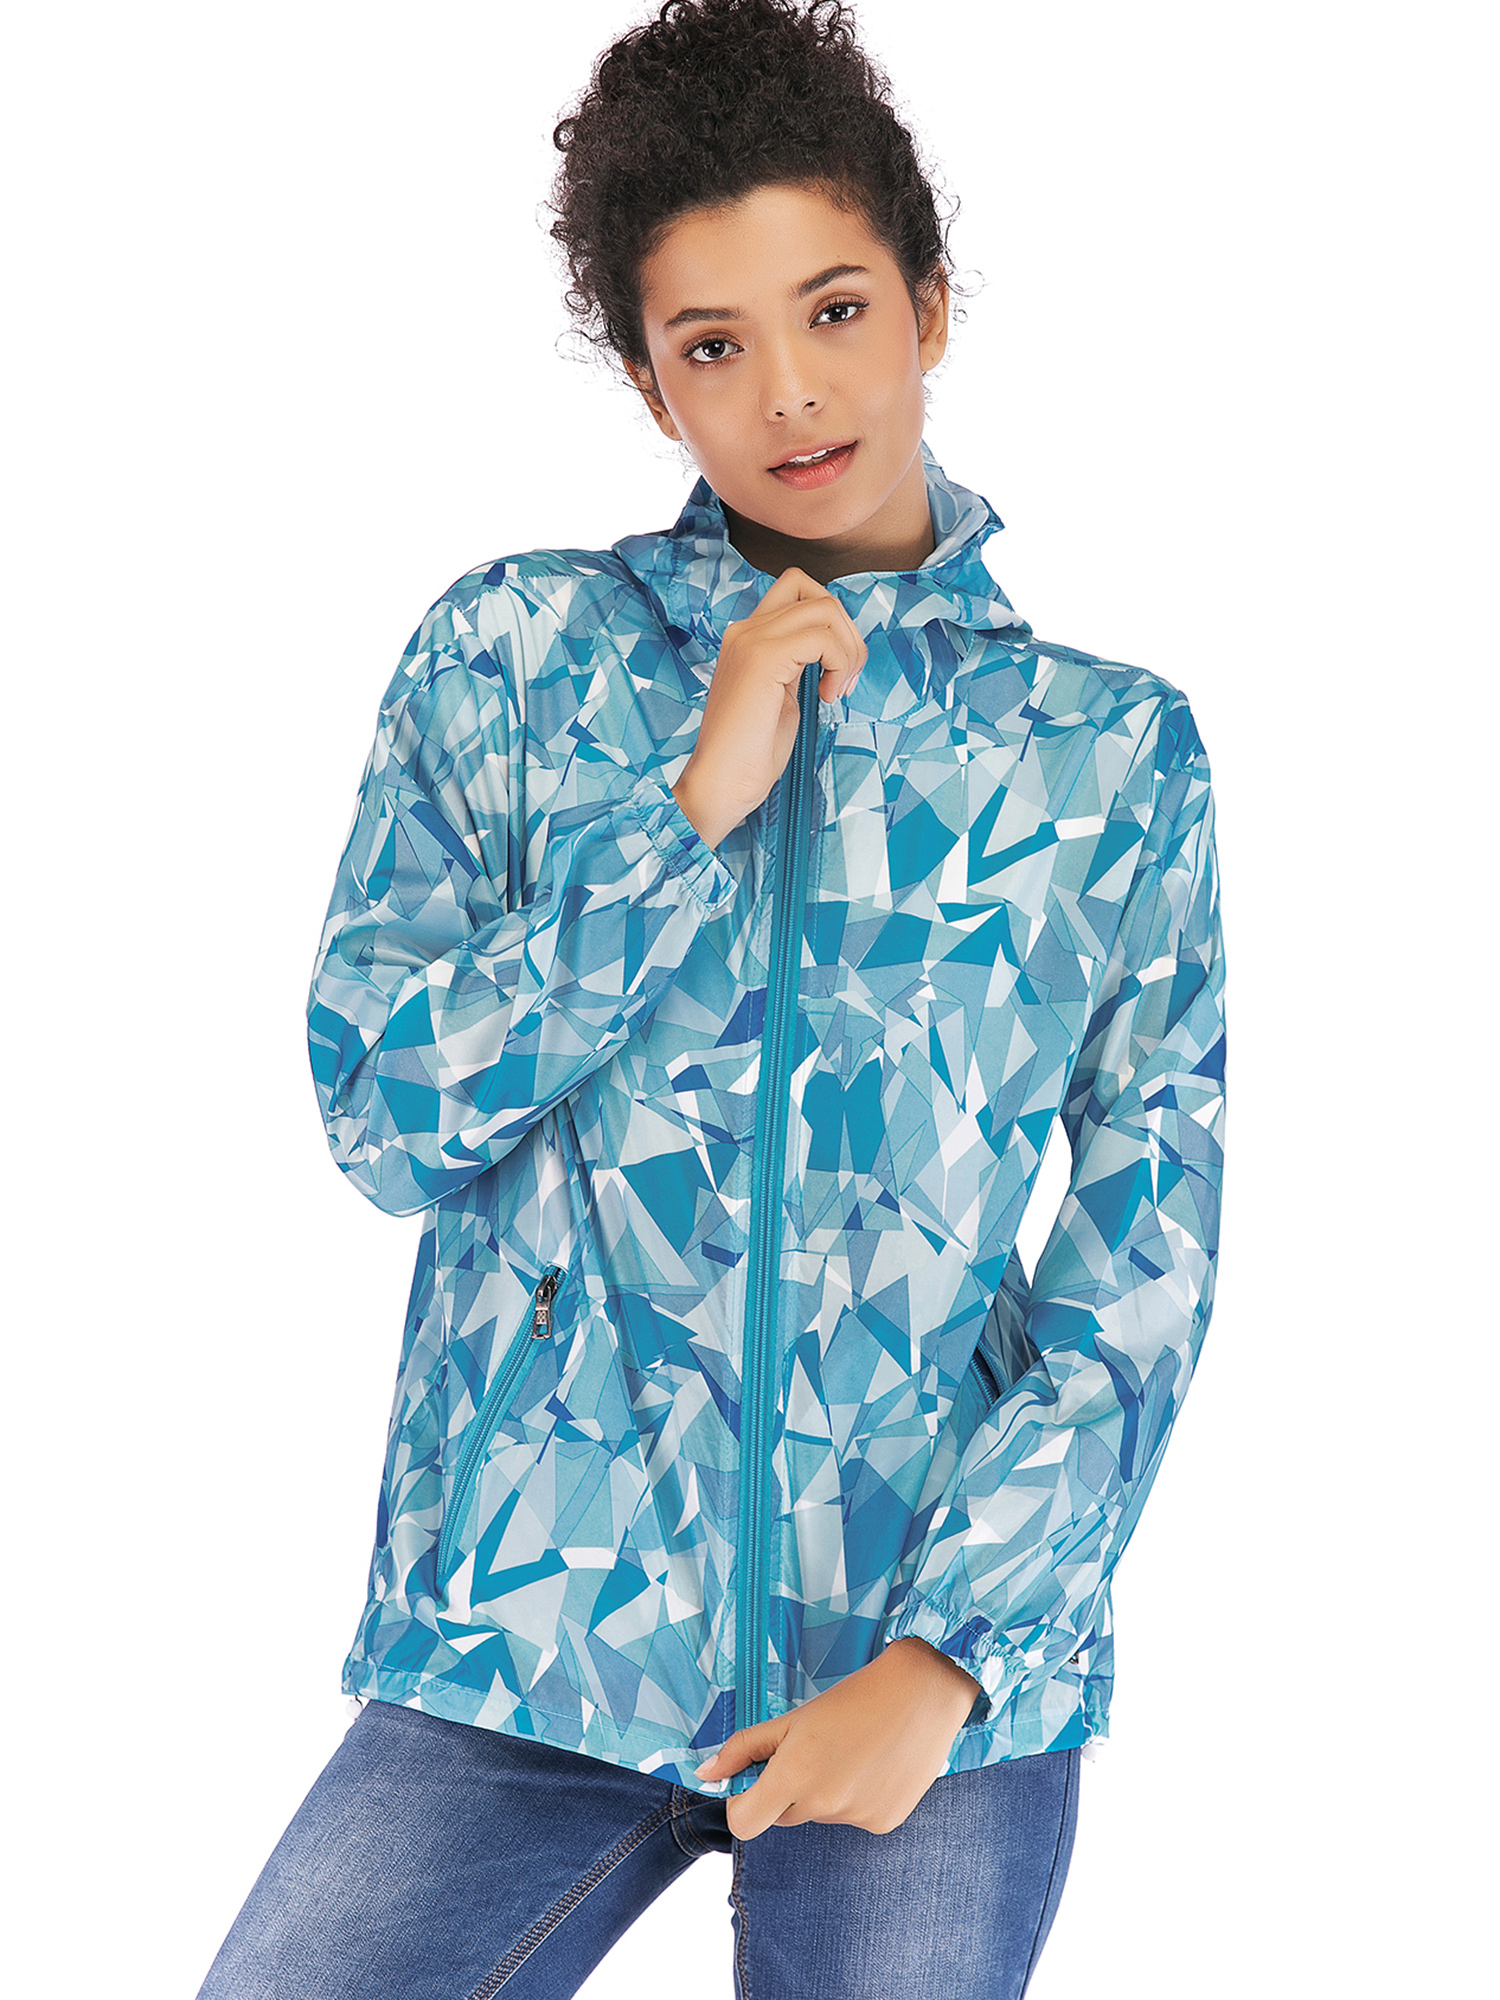 SAYFUT Womens Waterproof Stylish Hooded Hiking Raincoat Packable Outdoor Slim Jacket Leisure Full Zip Hoodie Windbreaker Coats - image 4 of 8